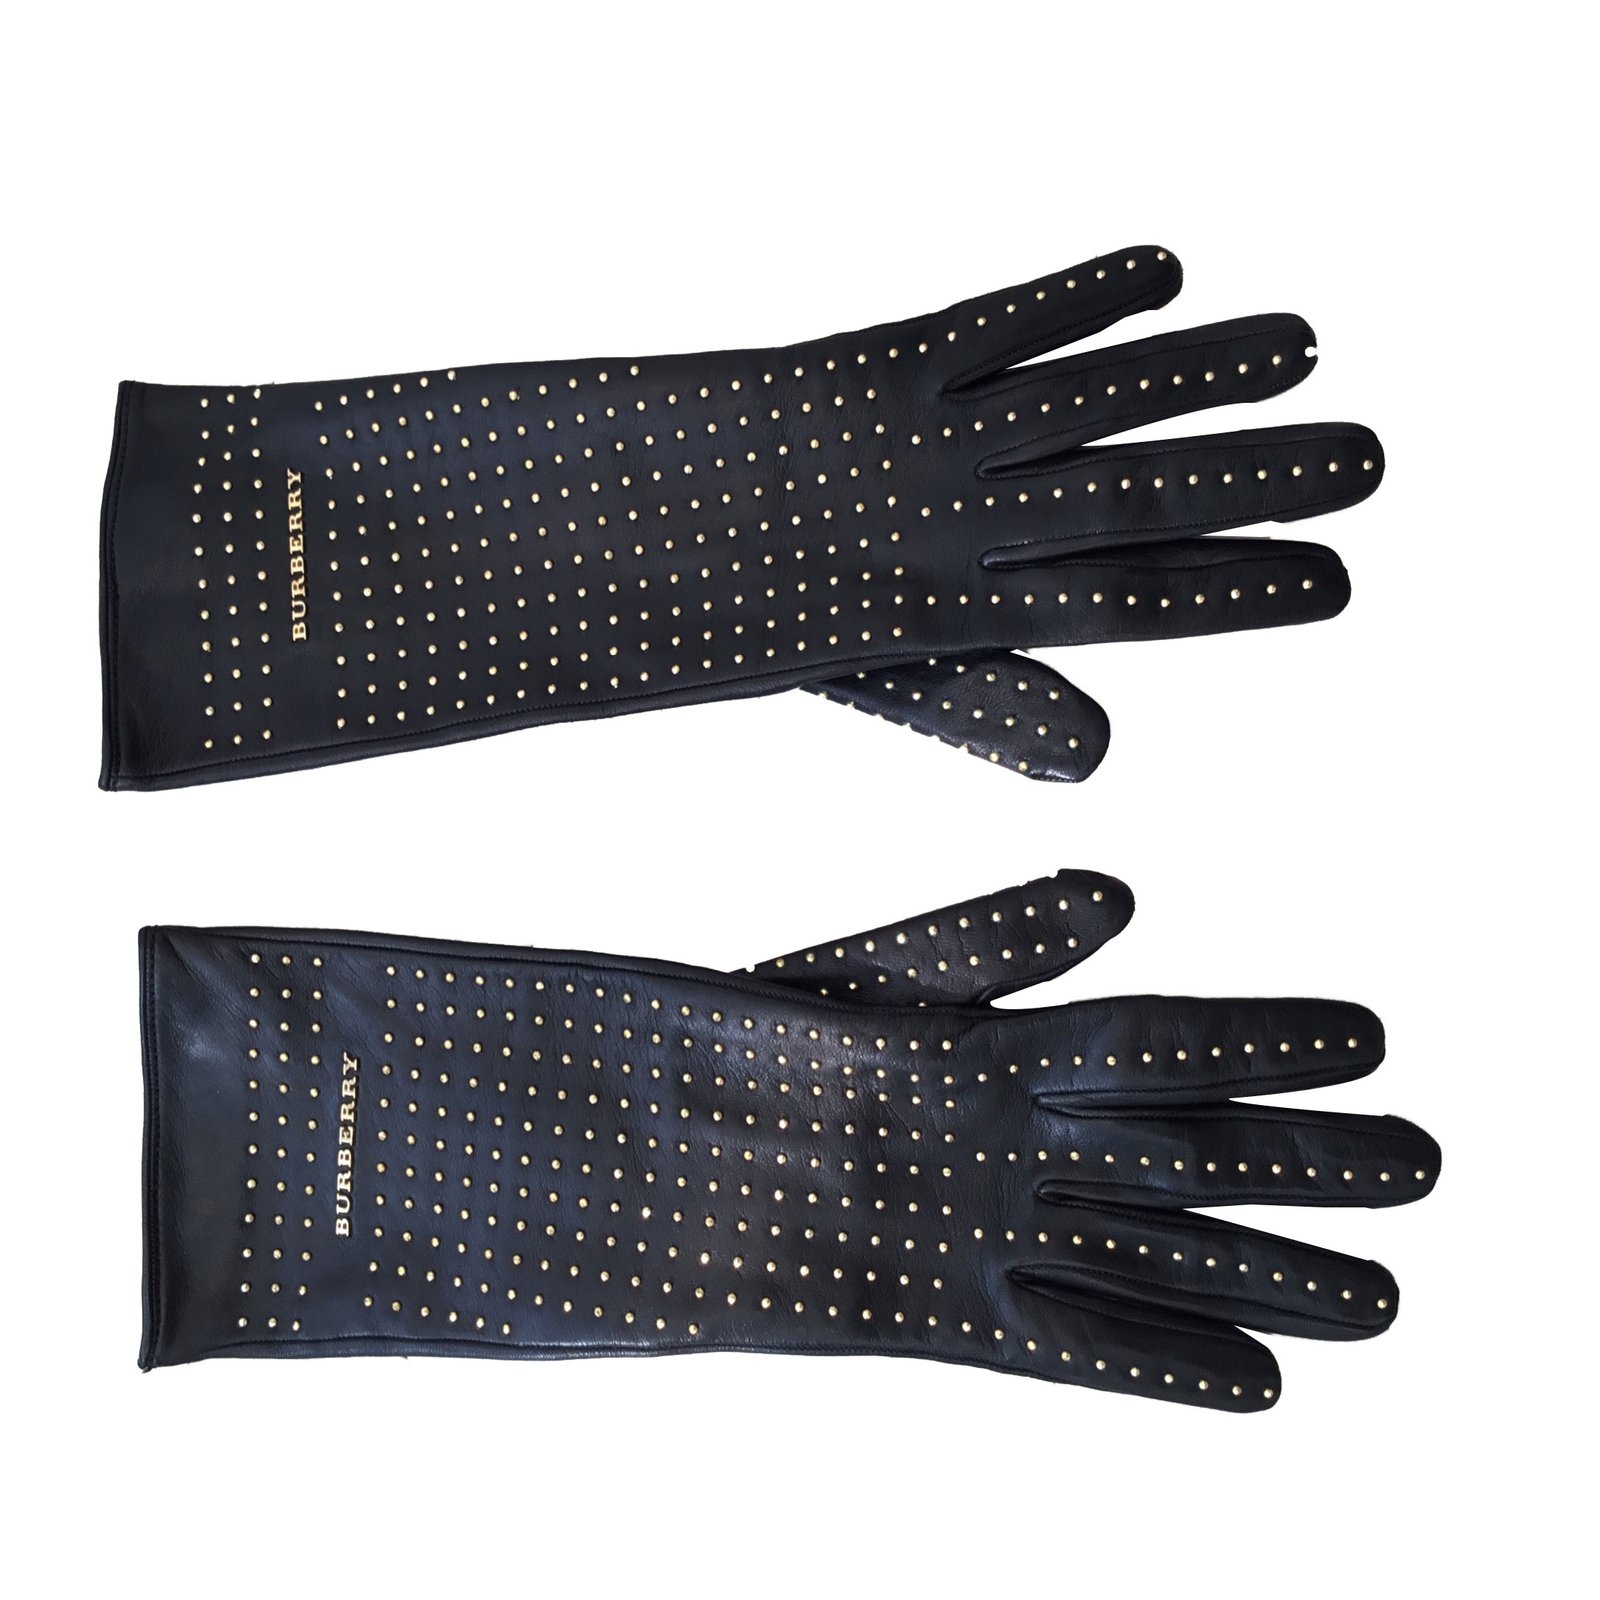 burberry gloves black